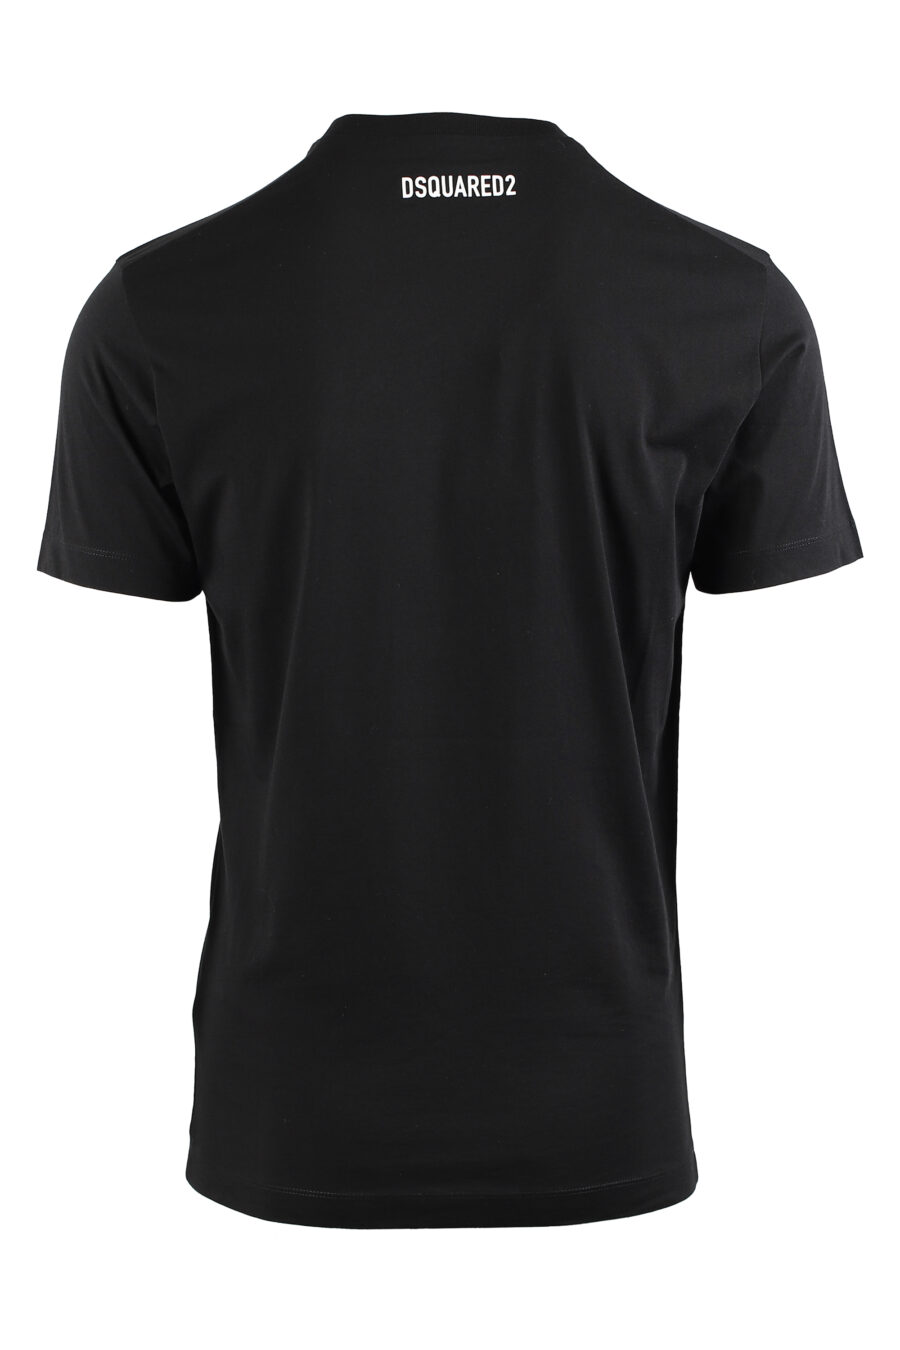 Camiseta negra con maxilogo "d2" en cuadro amarillo - IMG 0469